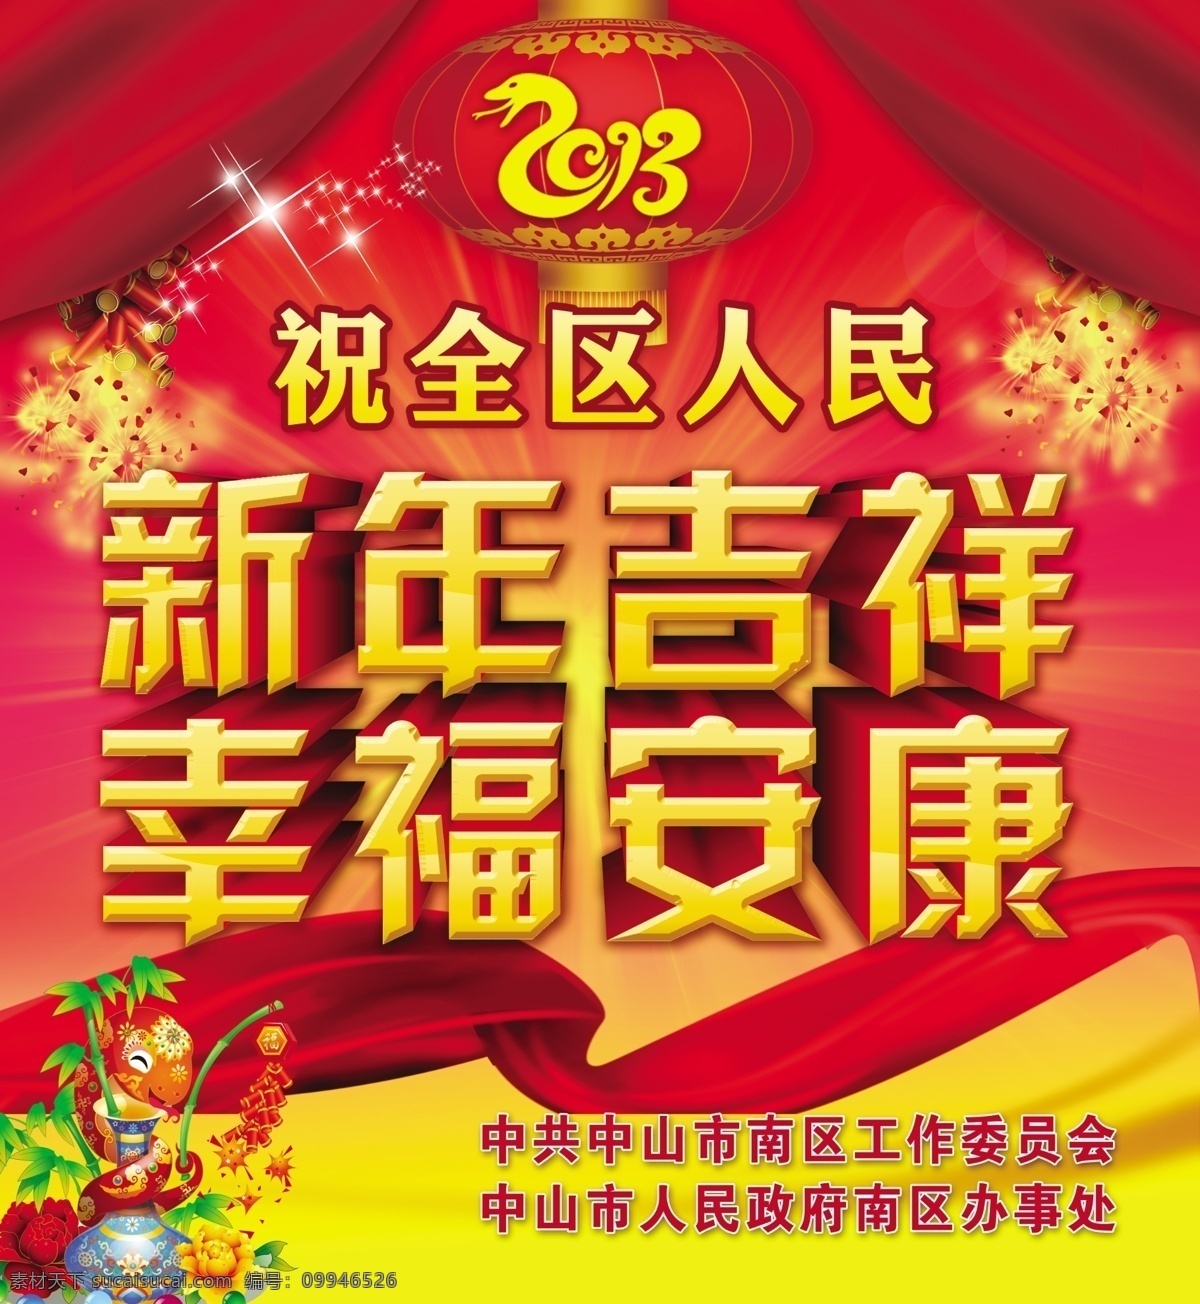 春节新年广告 蛇年 2013 新年吉祥 幸福安康 新年 春节 广告设计模板 源文件